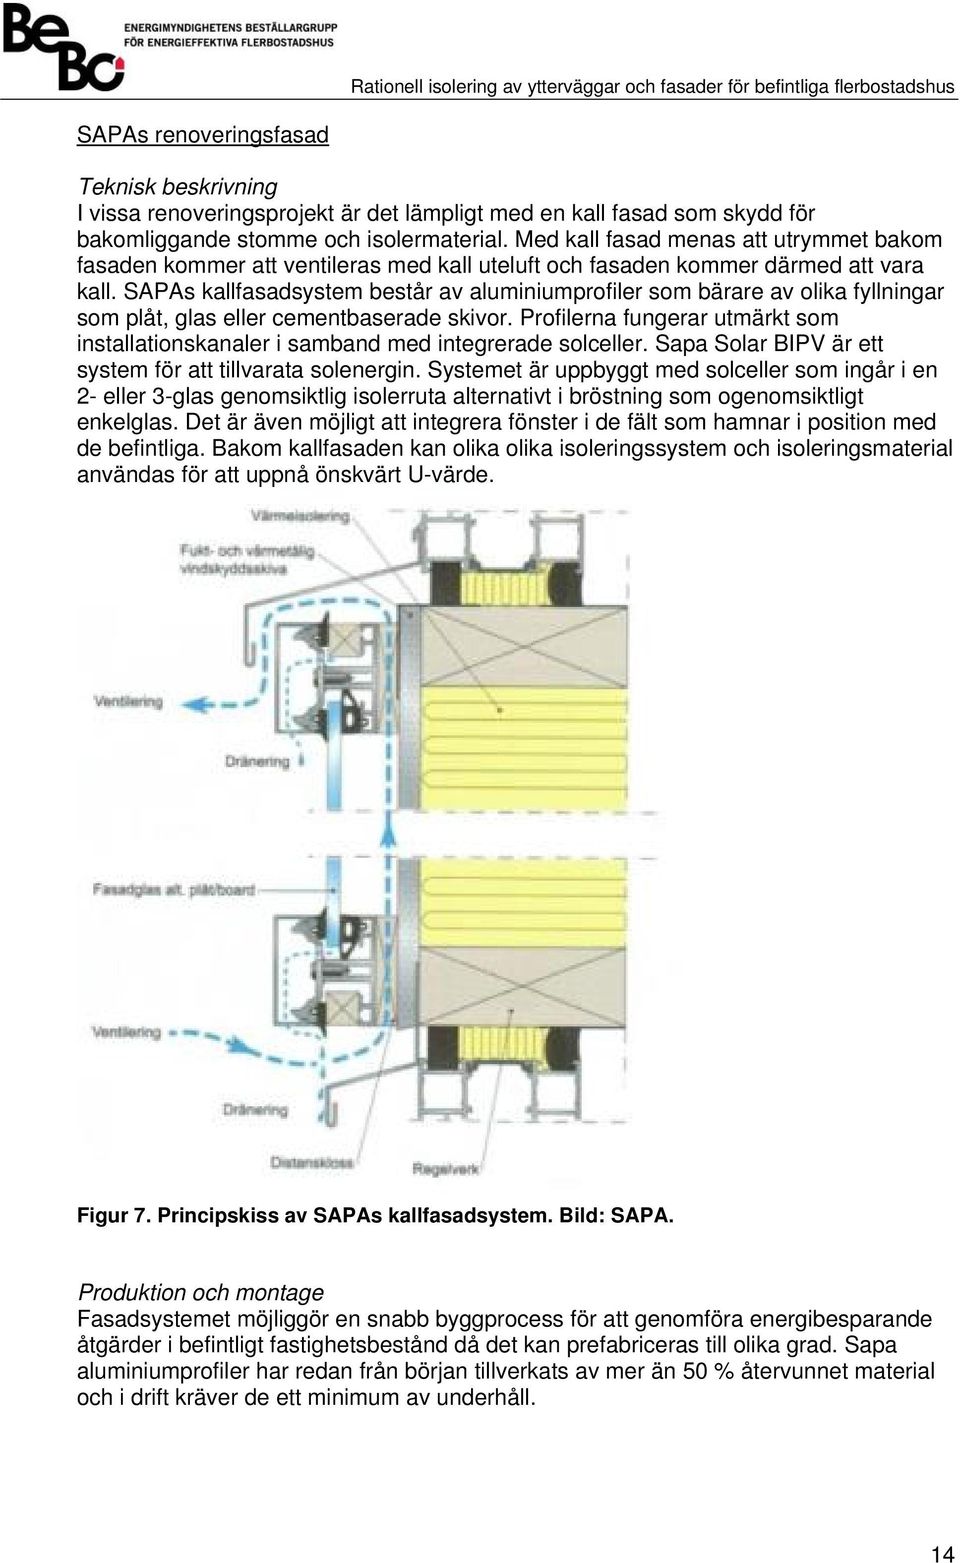 SAPAs kallfasadsystem består av aluminiumprofiler som bärare av olika fyllningar som plåt, glas eller cementbaserade skivor.